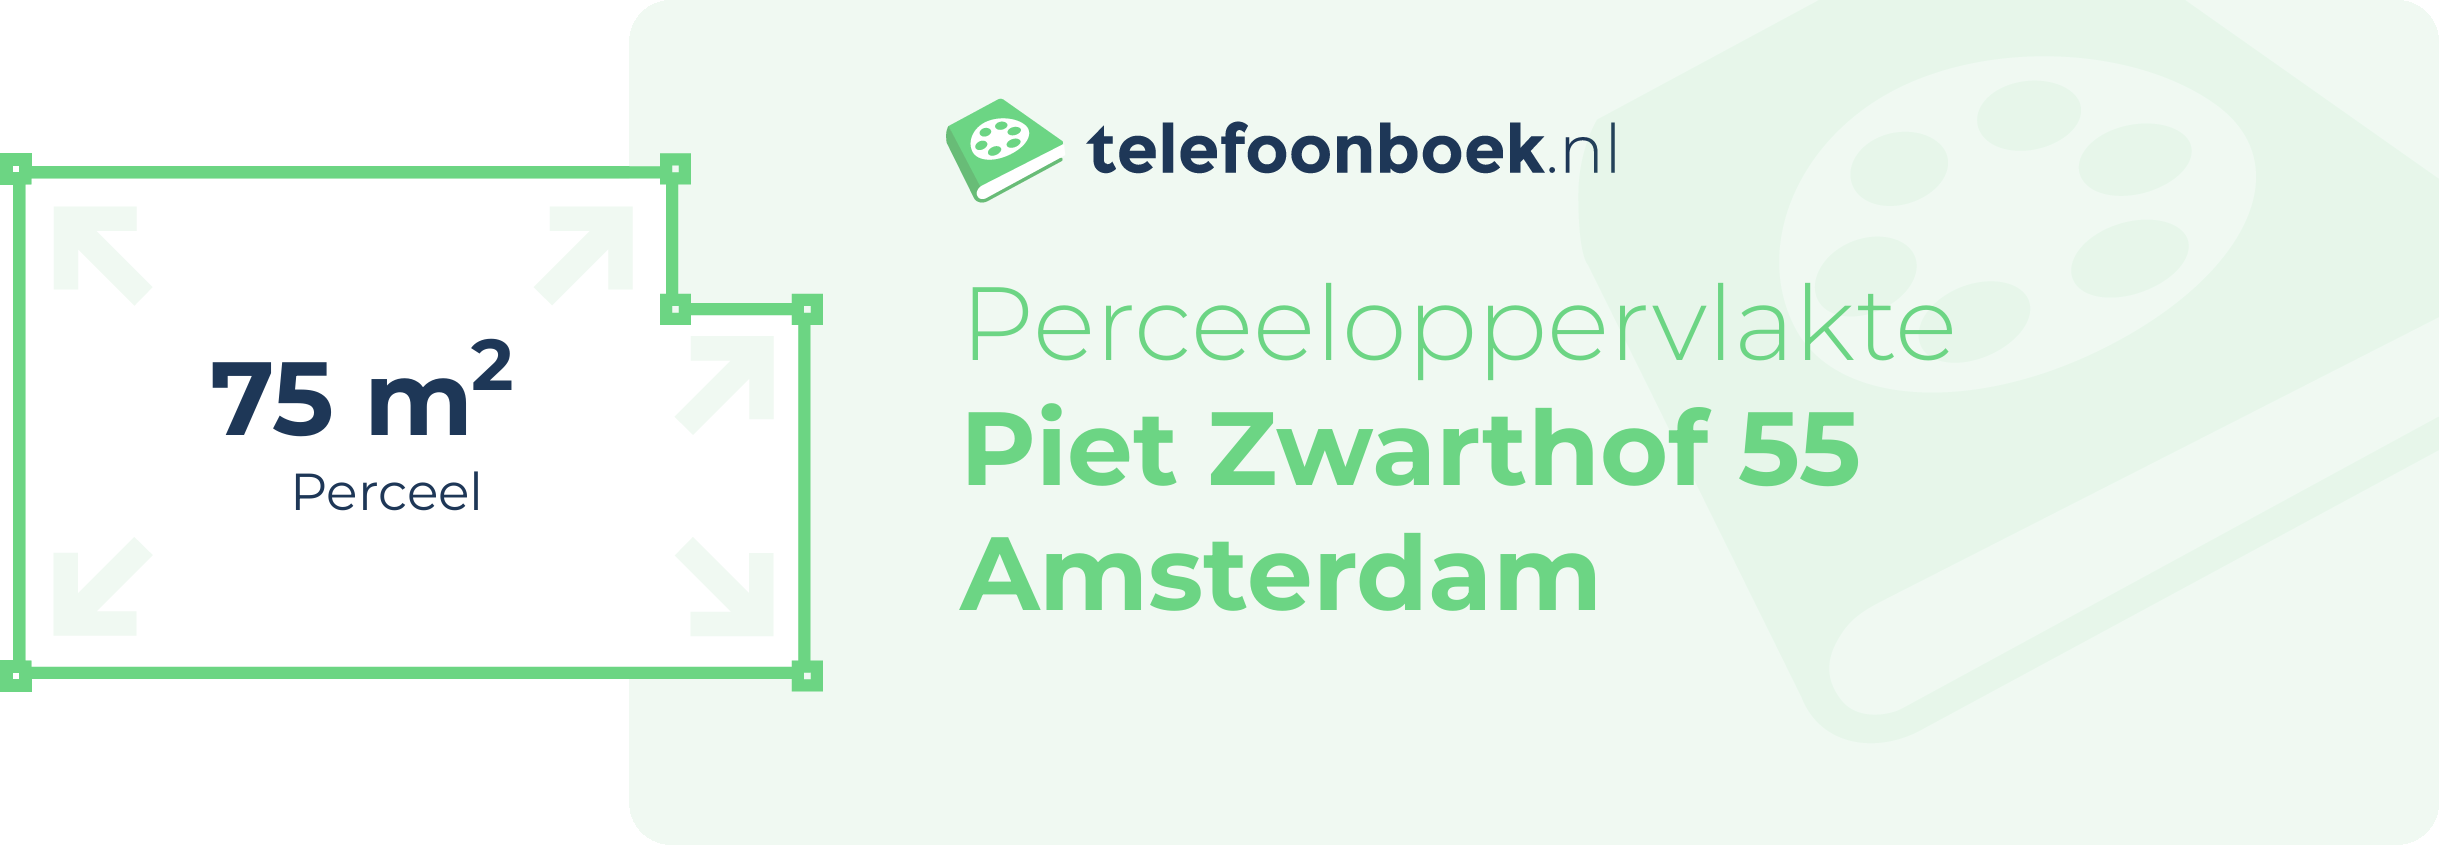 Perceeloppervlakte Piet Zwarthof 55 Amsterdam